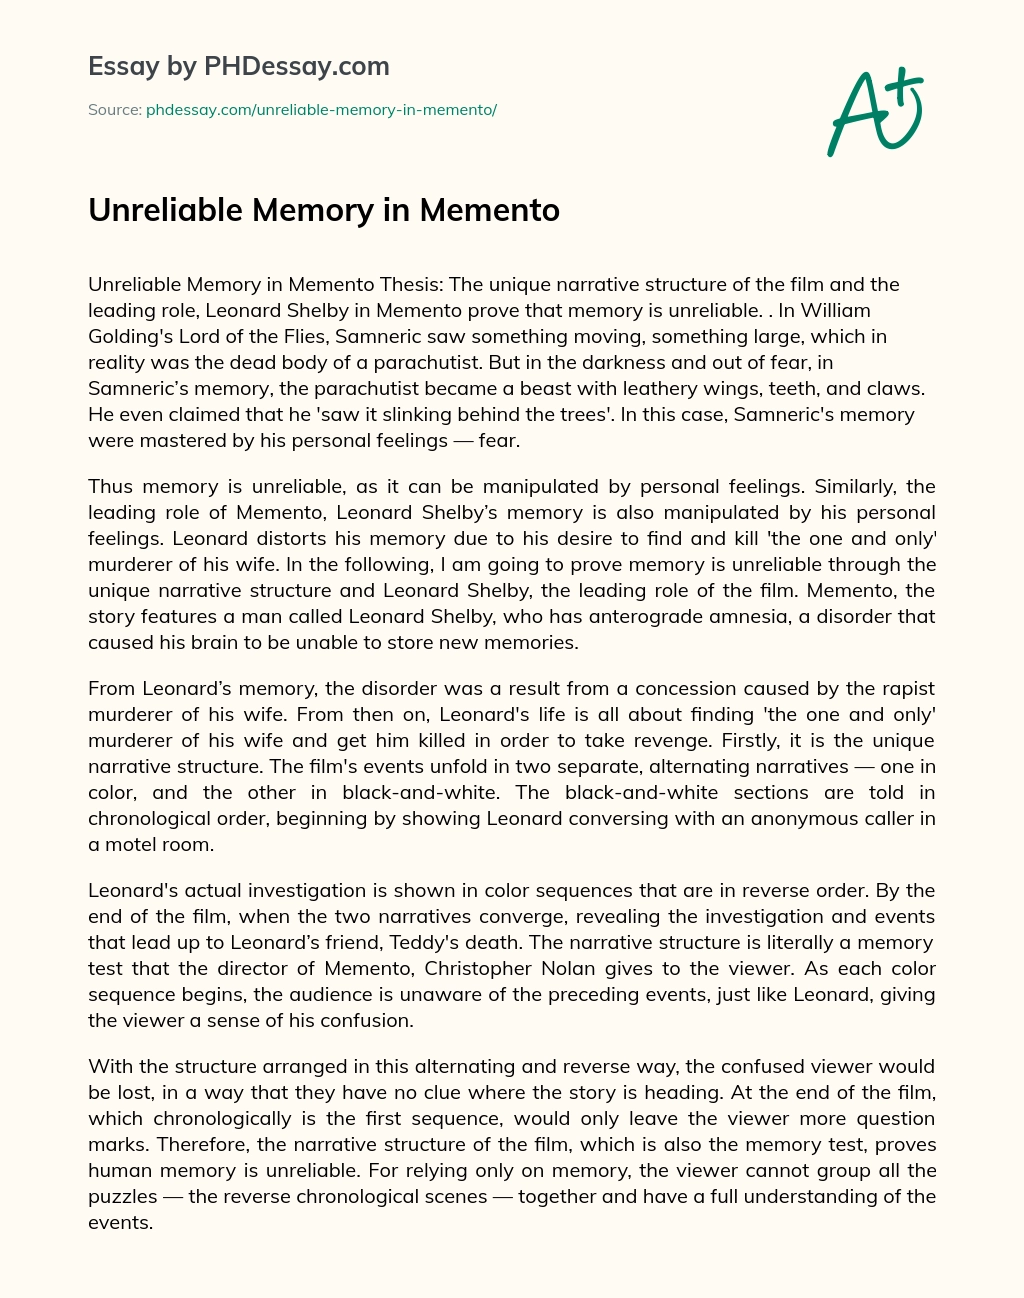 Unreliable Memory in Memento essay